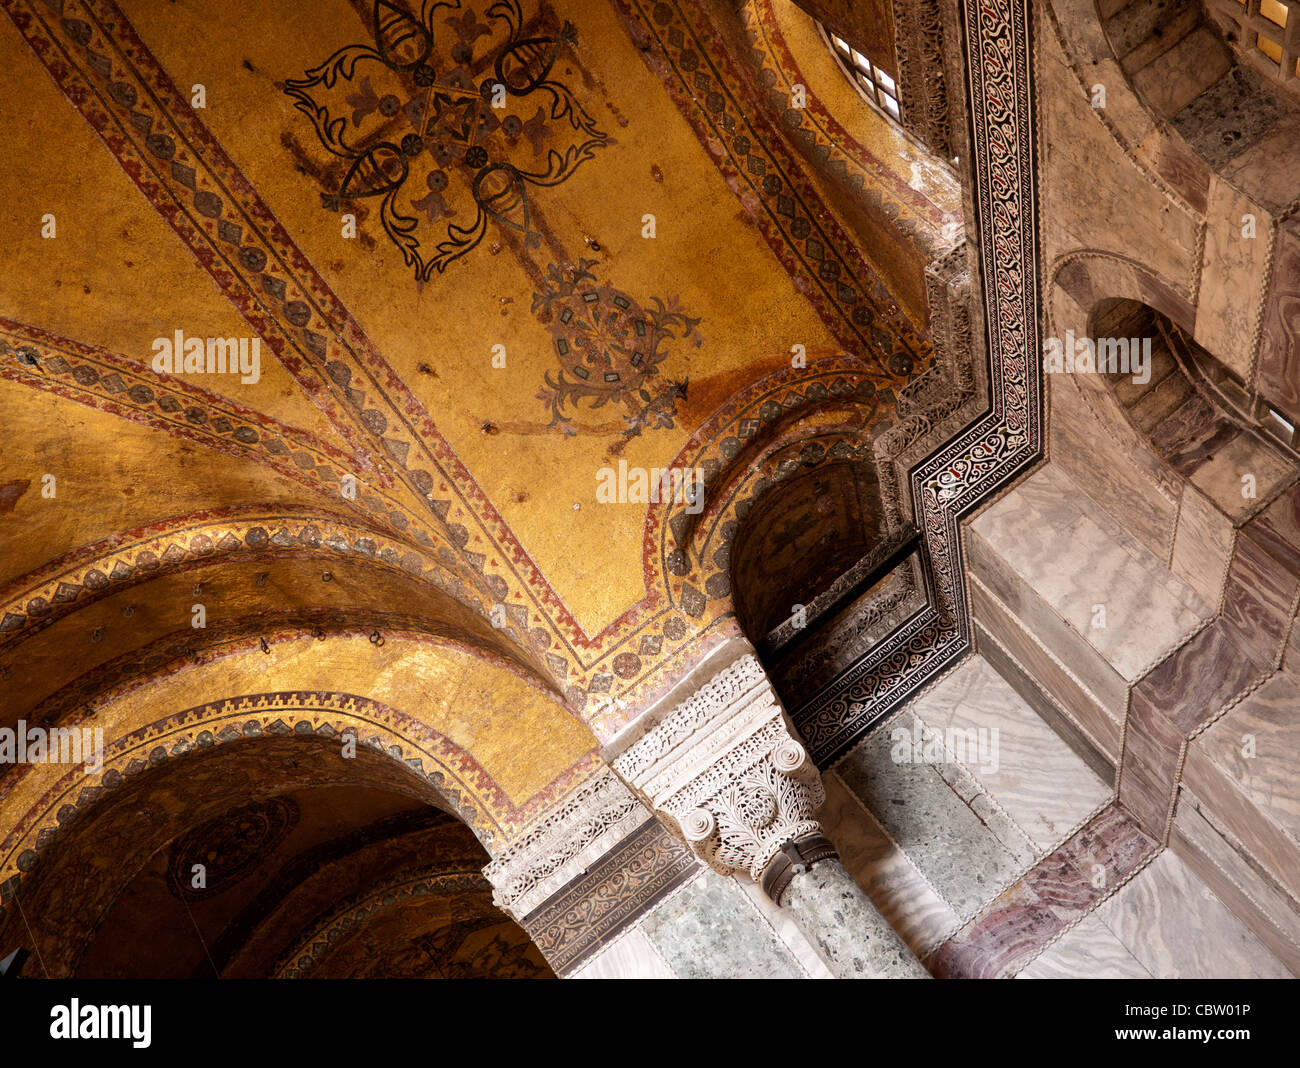 Gold mosaics on the arches of Hagia Sophia (Aya Sofya) basilica, Sultanahmet, Istanbul, Turkey Stock Photo